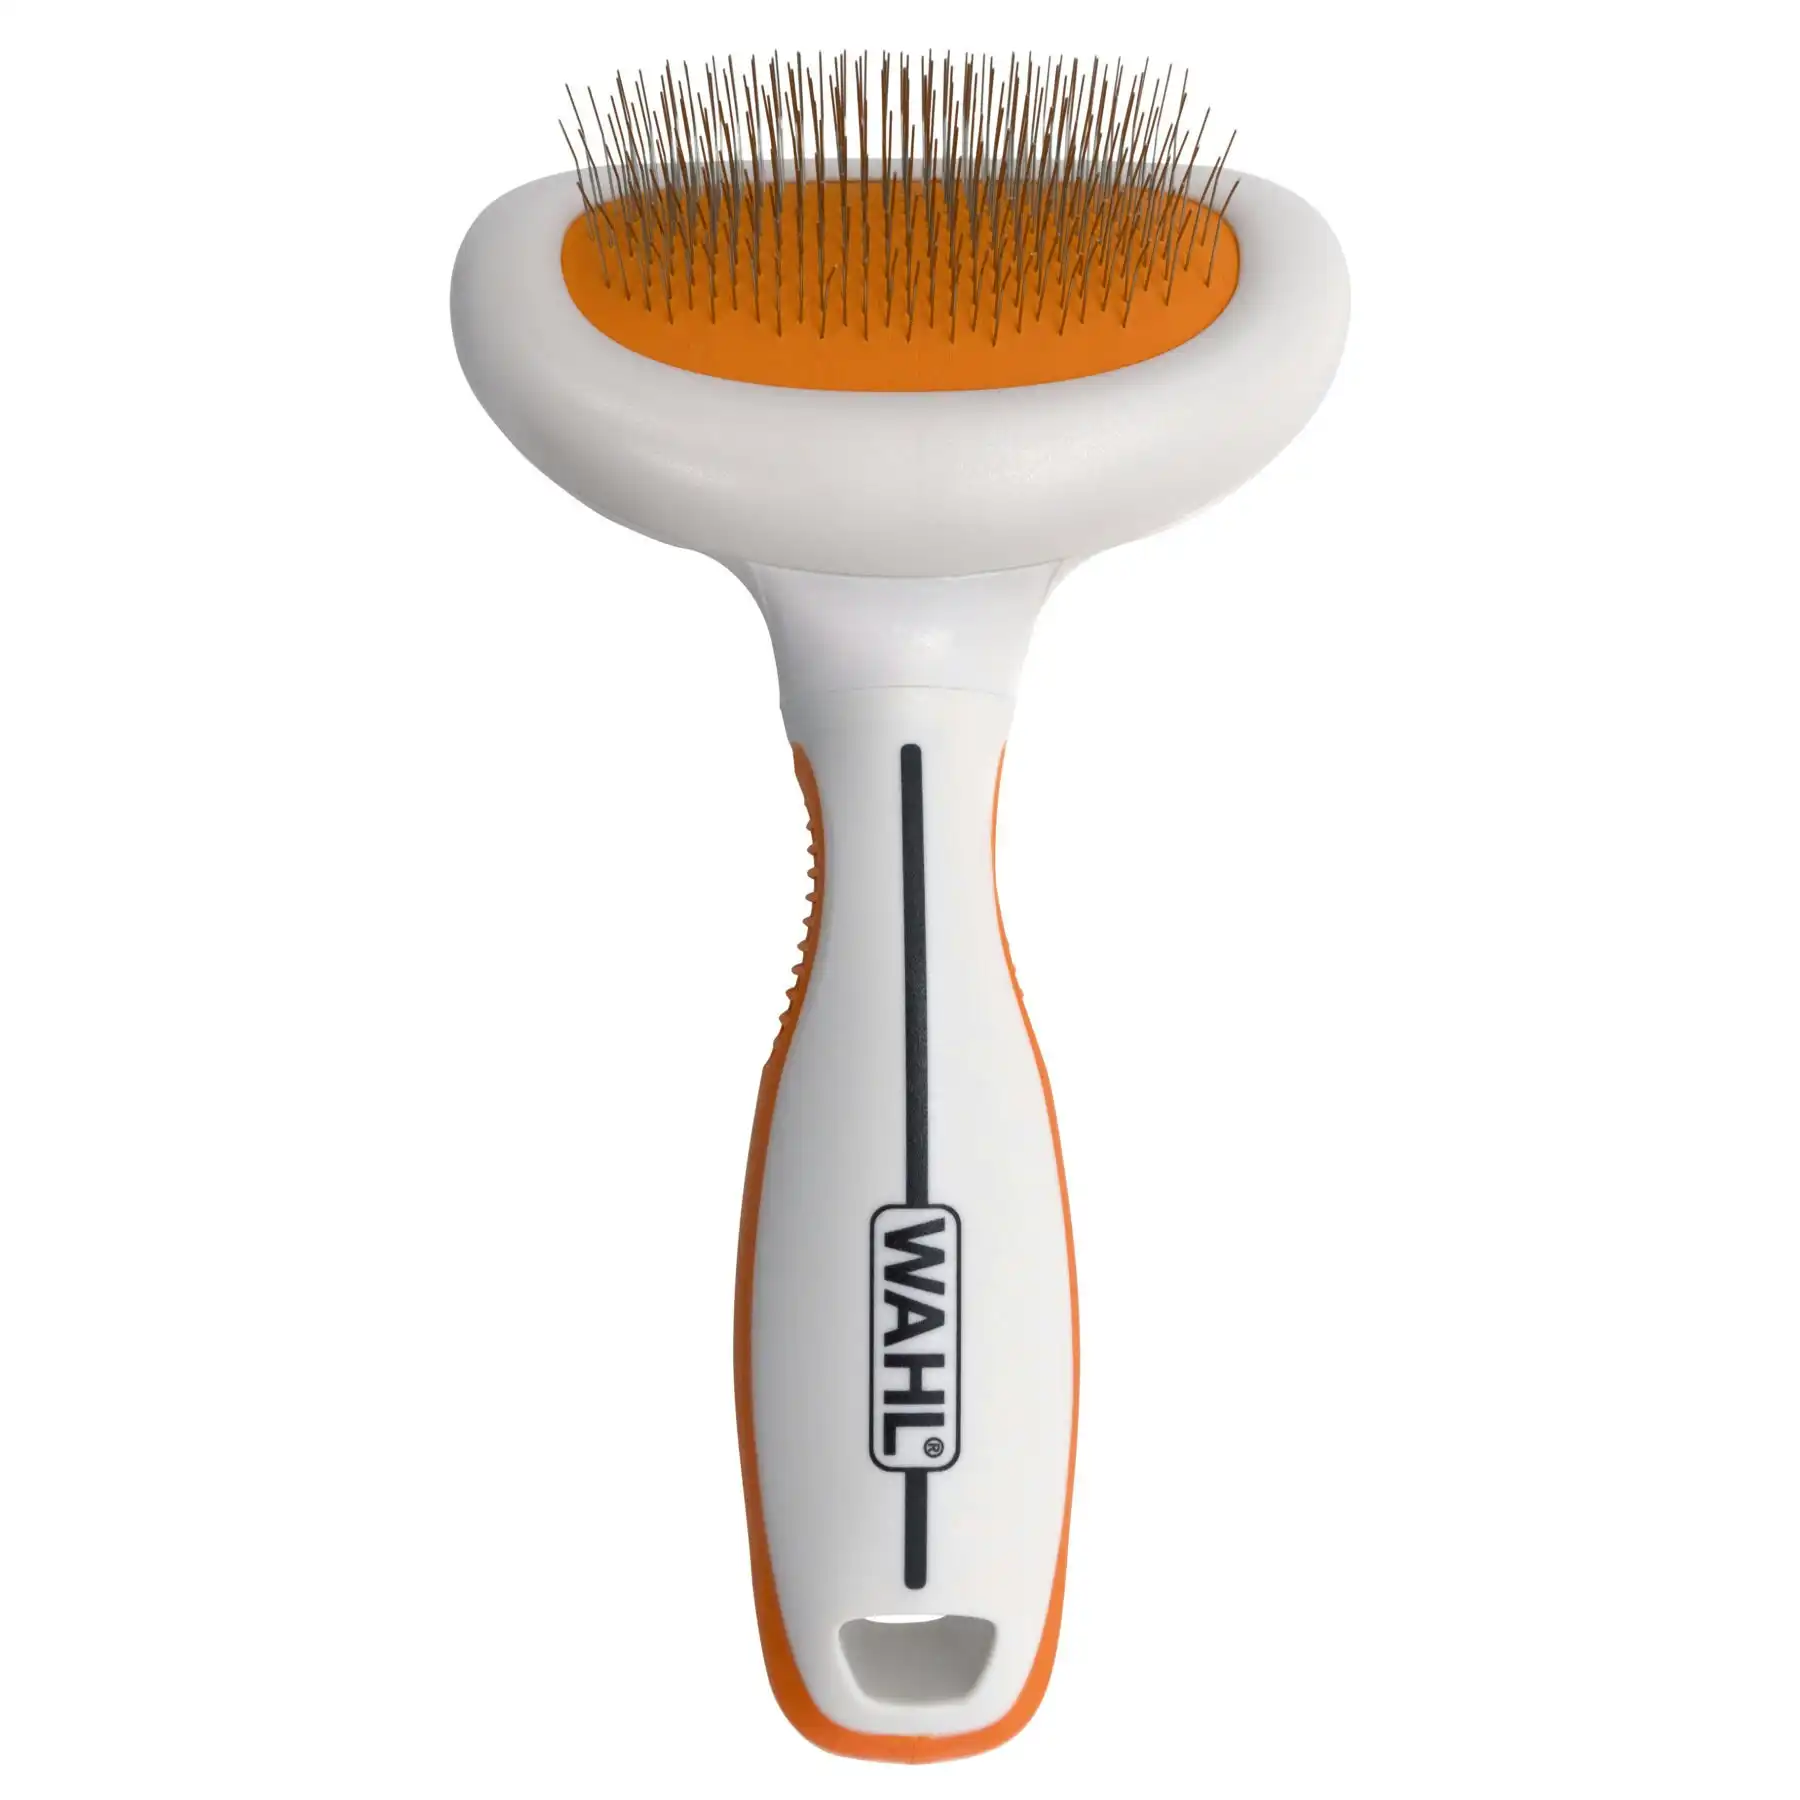 Wahl Orange and White Slicker Brush - Small